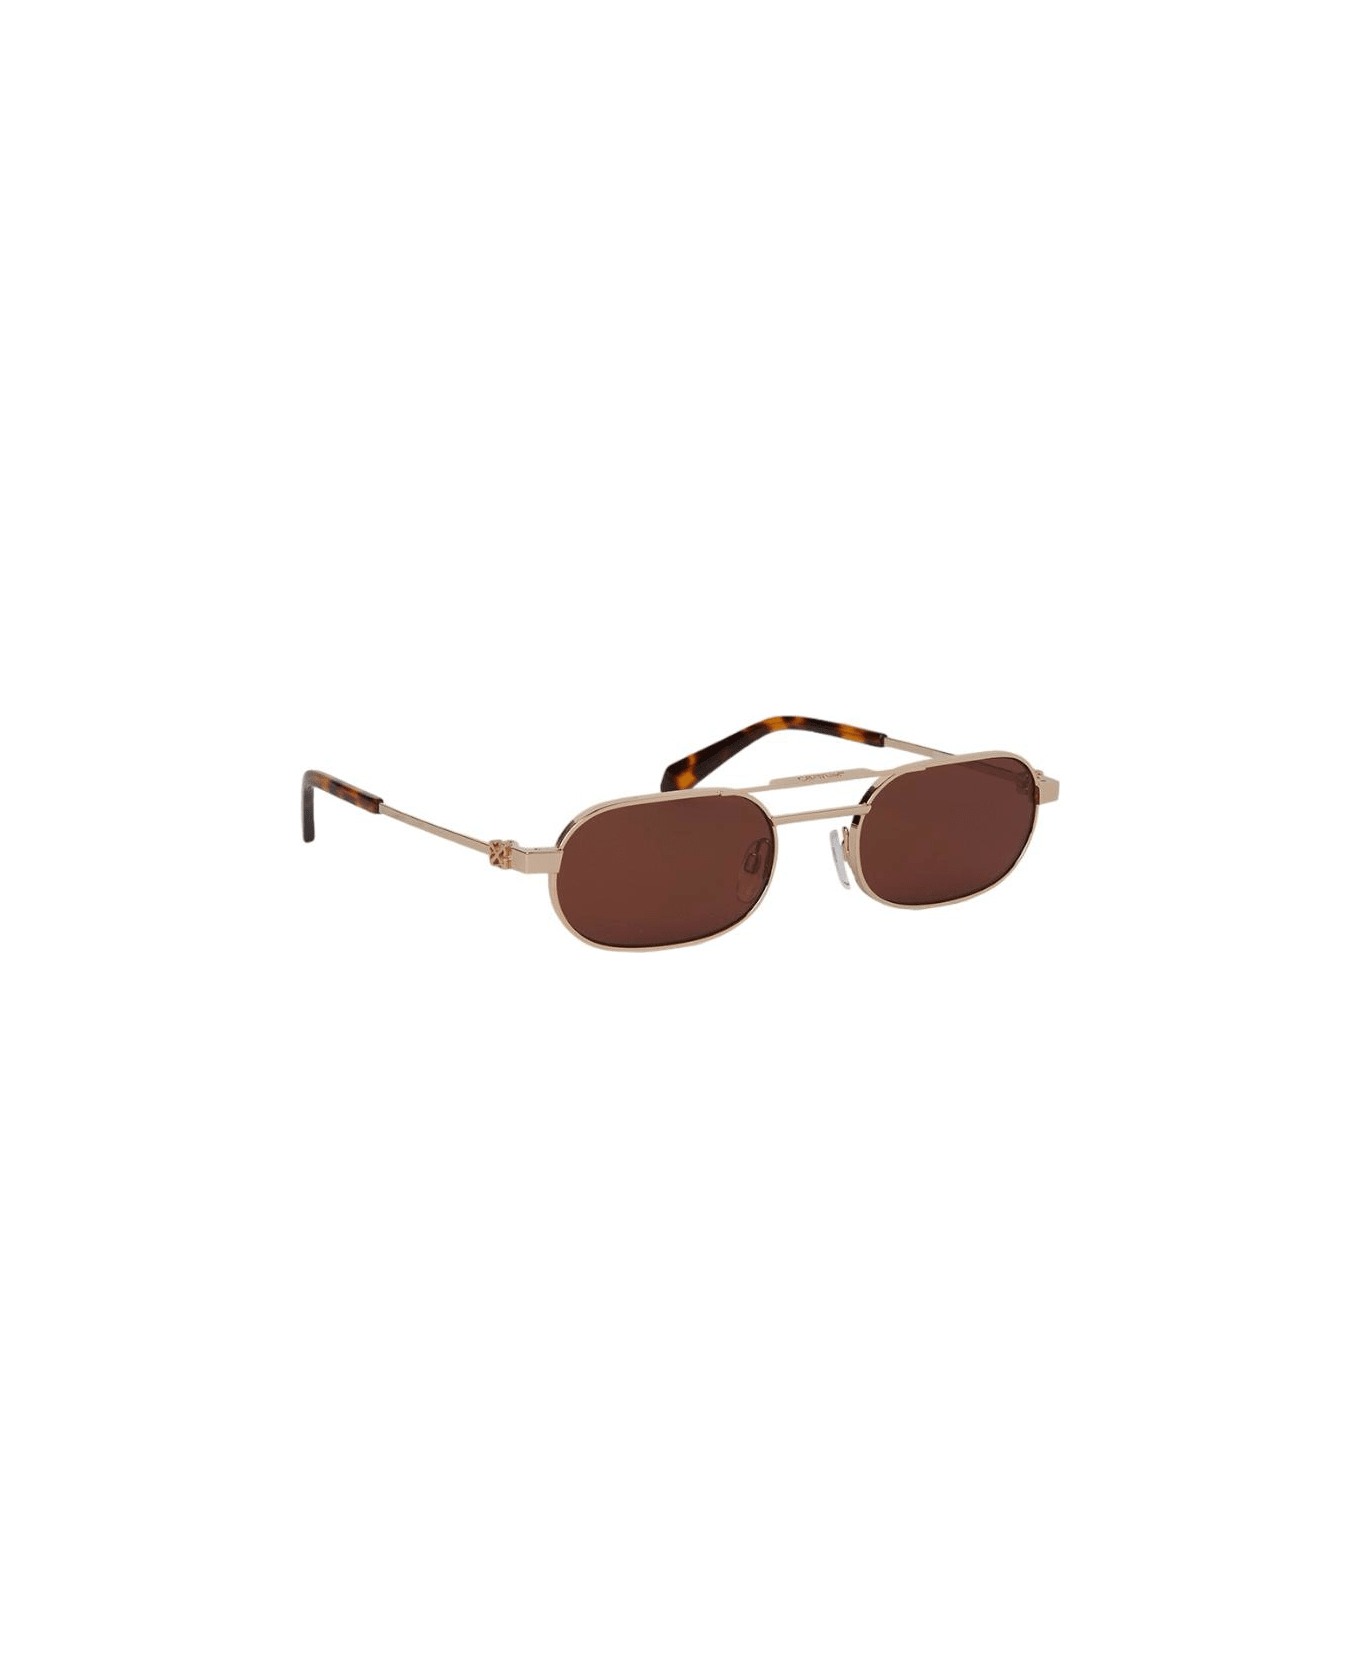 Off-White Vaiden - Oeri123 Sunglasses サングラス